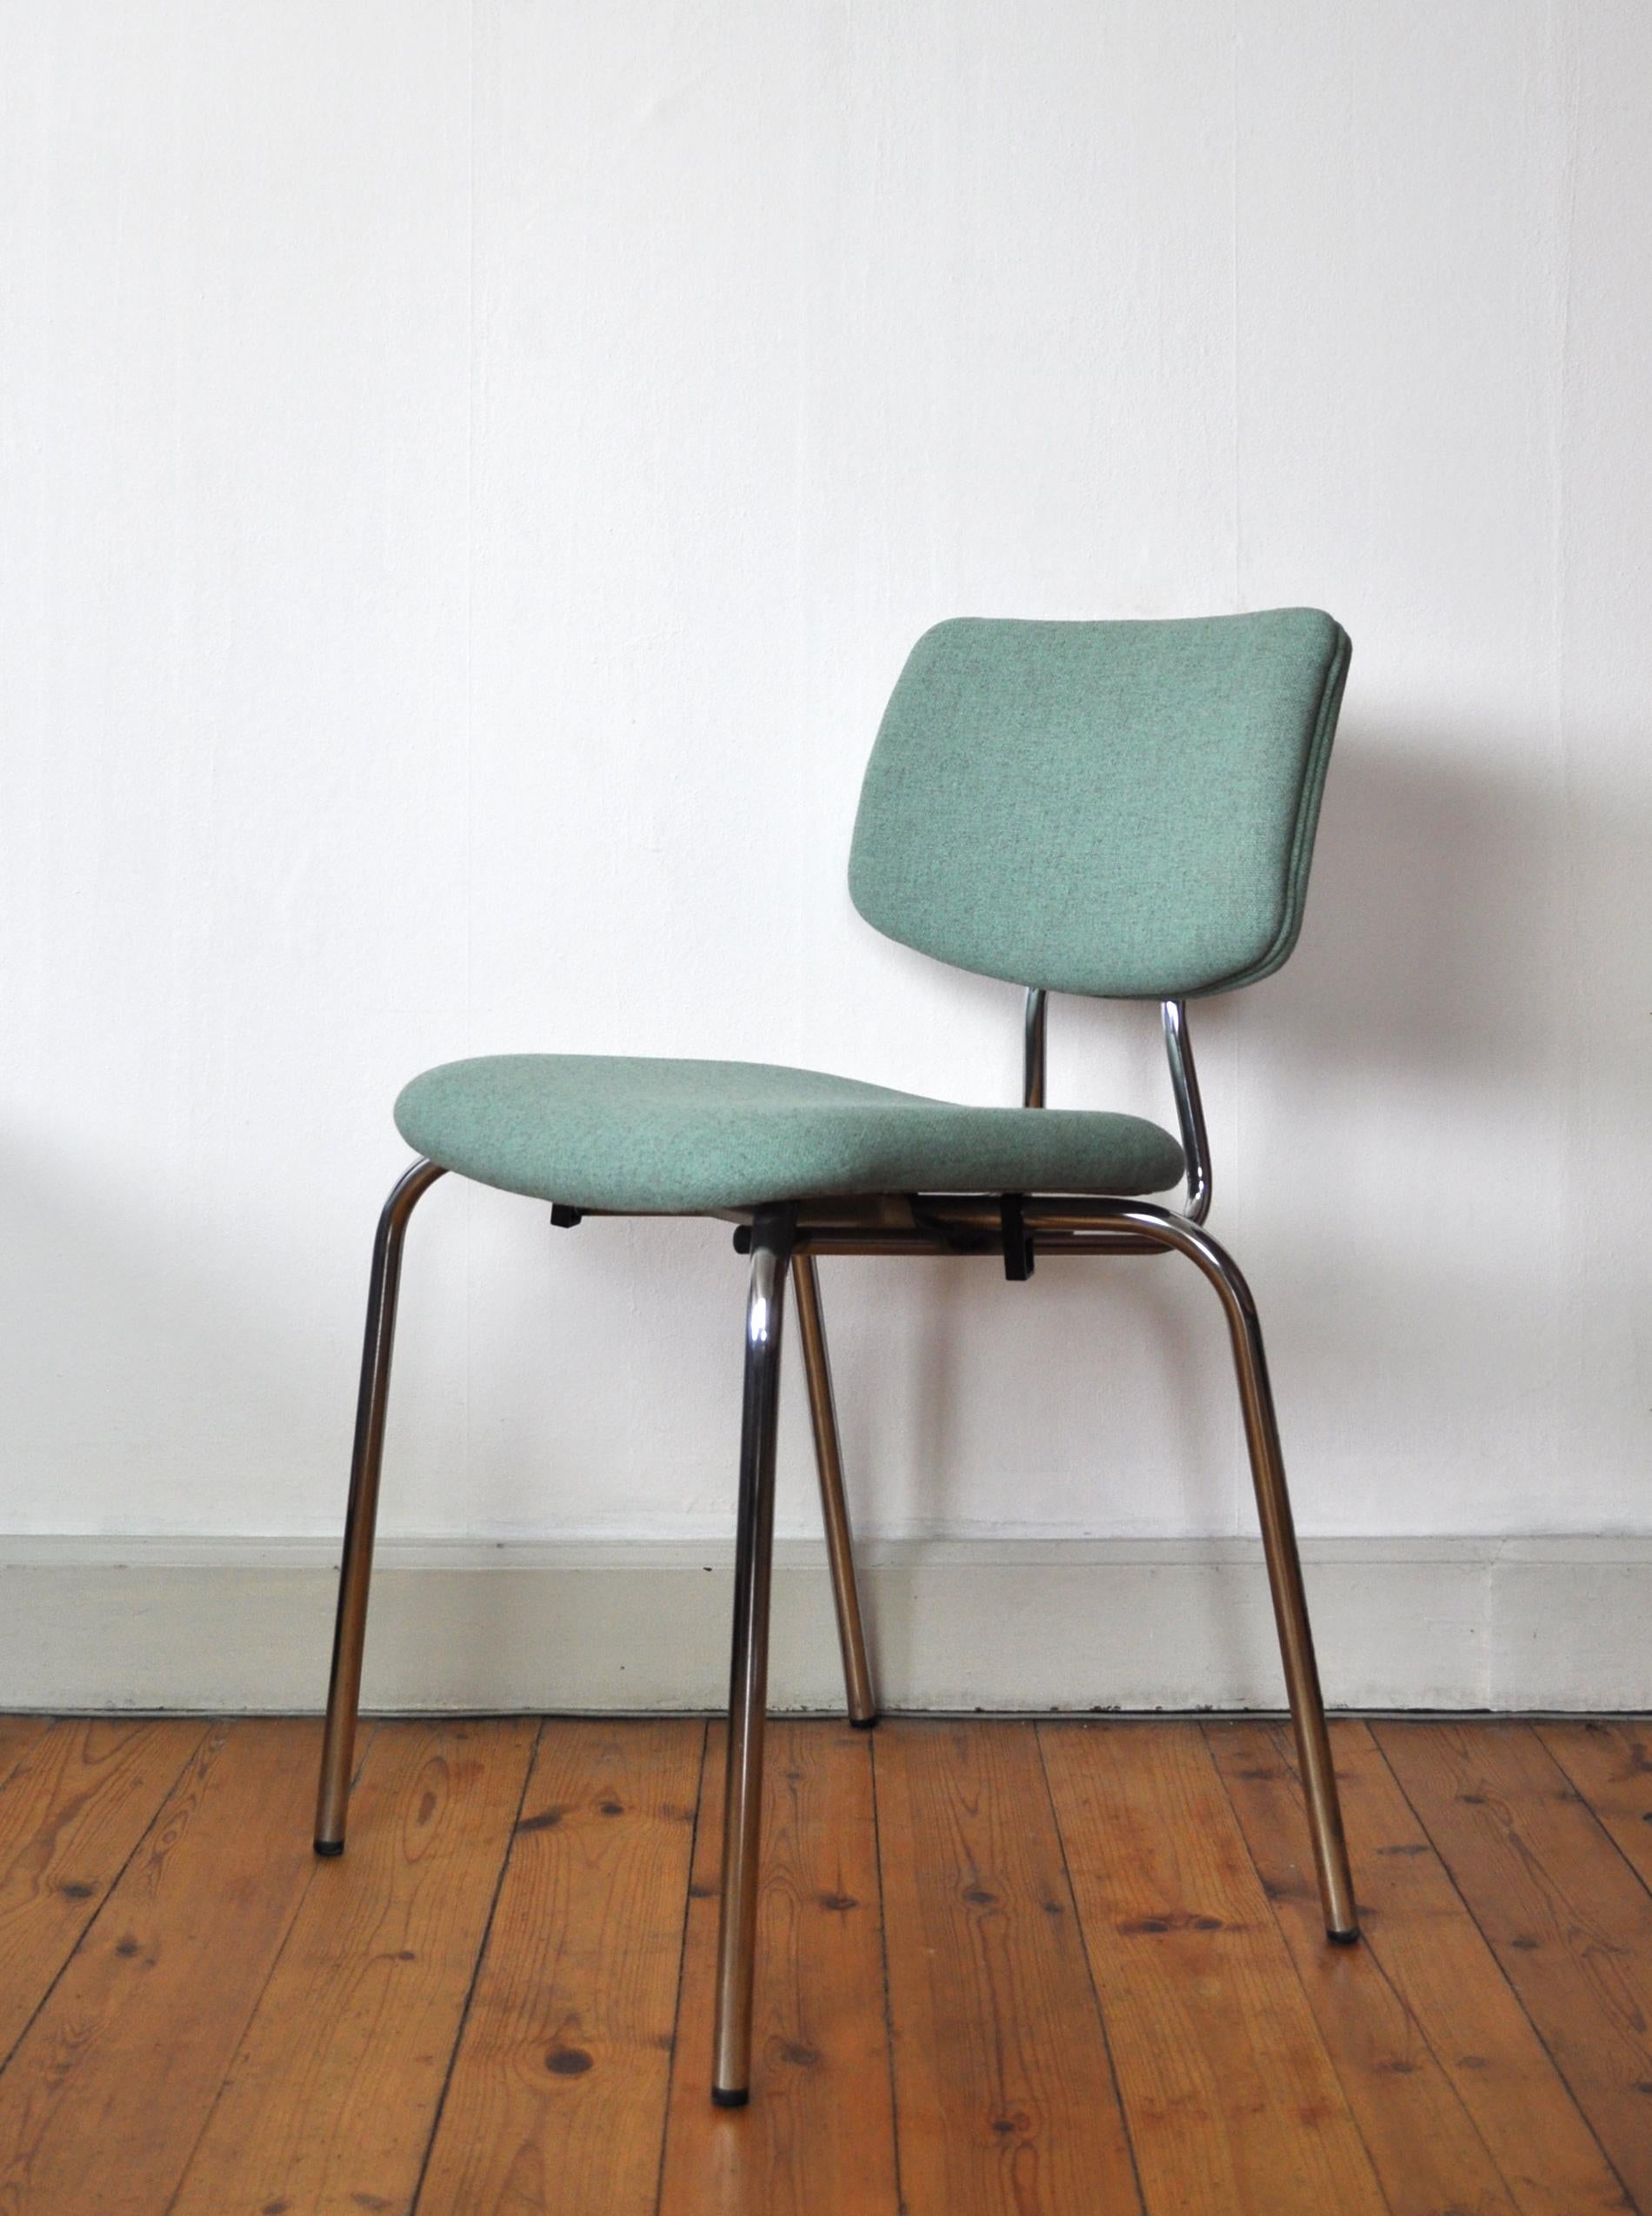 Scandinavian Modern Danish Side Chair by Duba, Chromed Frame and New Kvadrat Upholstery